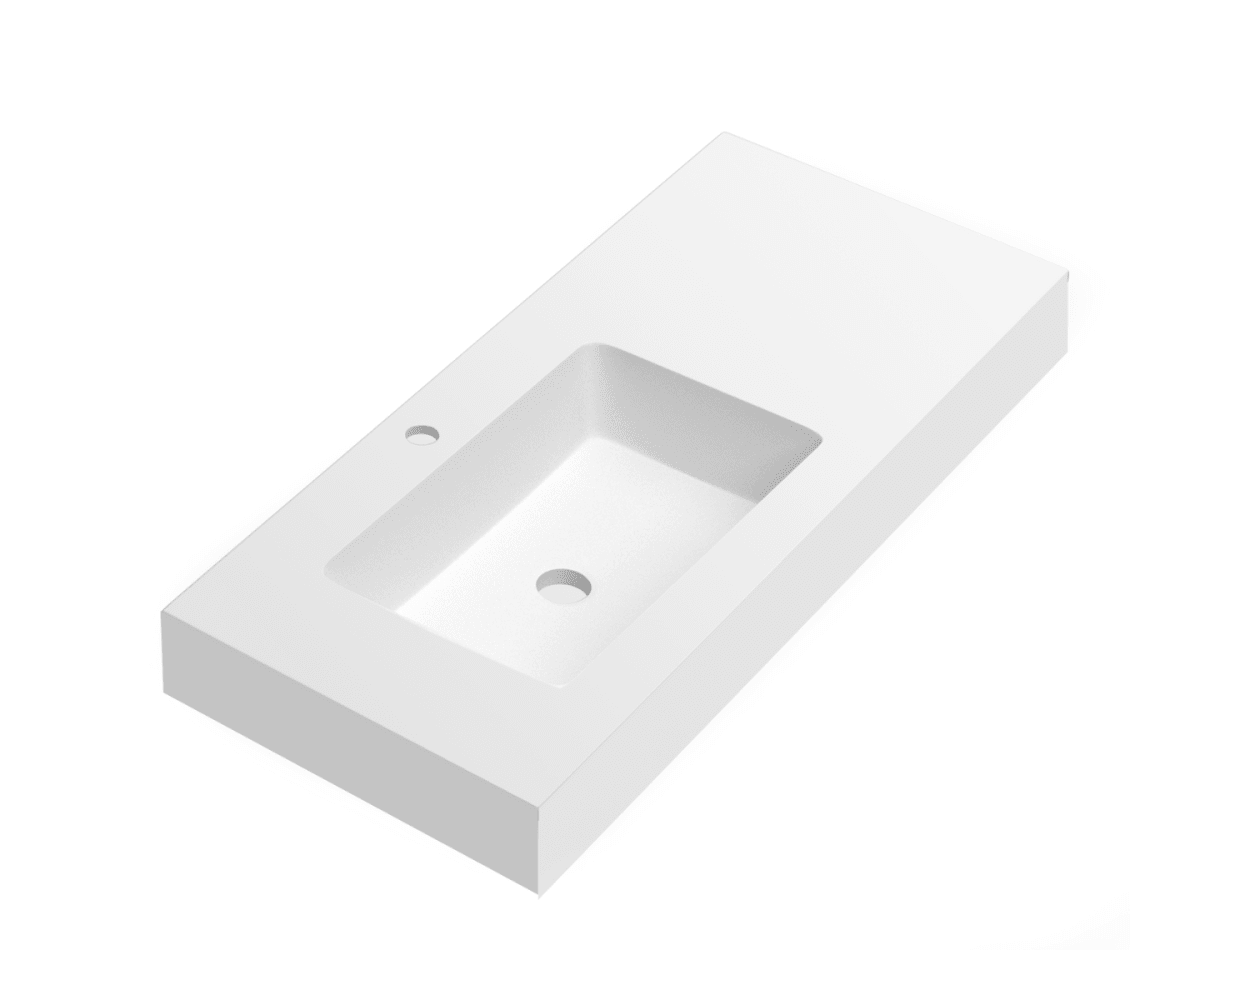 Lavabo suspendido o en encimera PB2142 en solid surface (Solid Stone) -  blanco mate - 60 x 42 x 10 cm